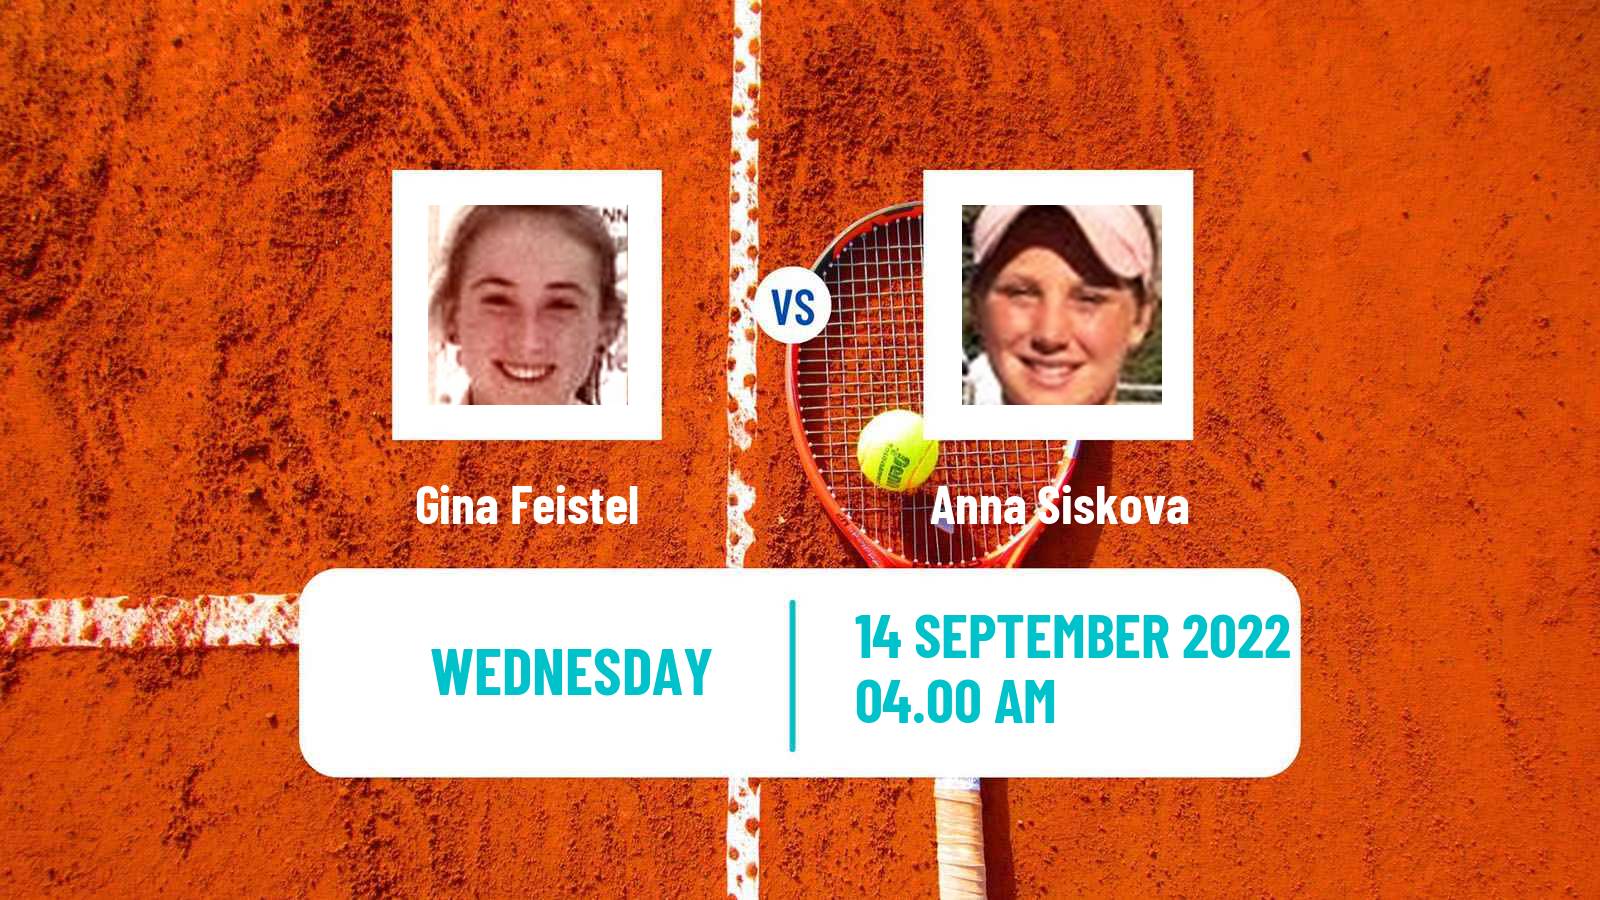 Tennis ITF Tournaments Gina Feistel - Anna Siskova